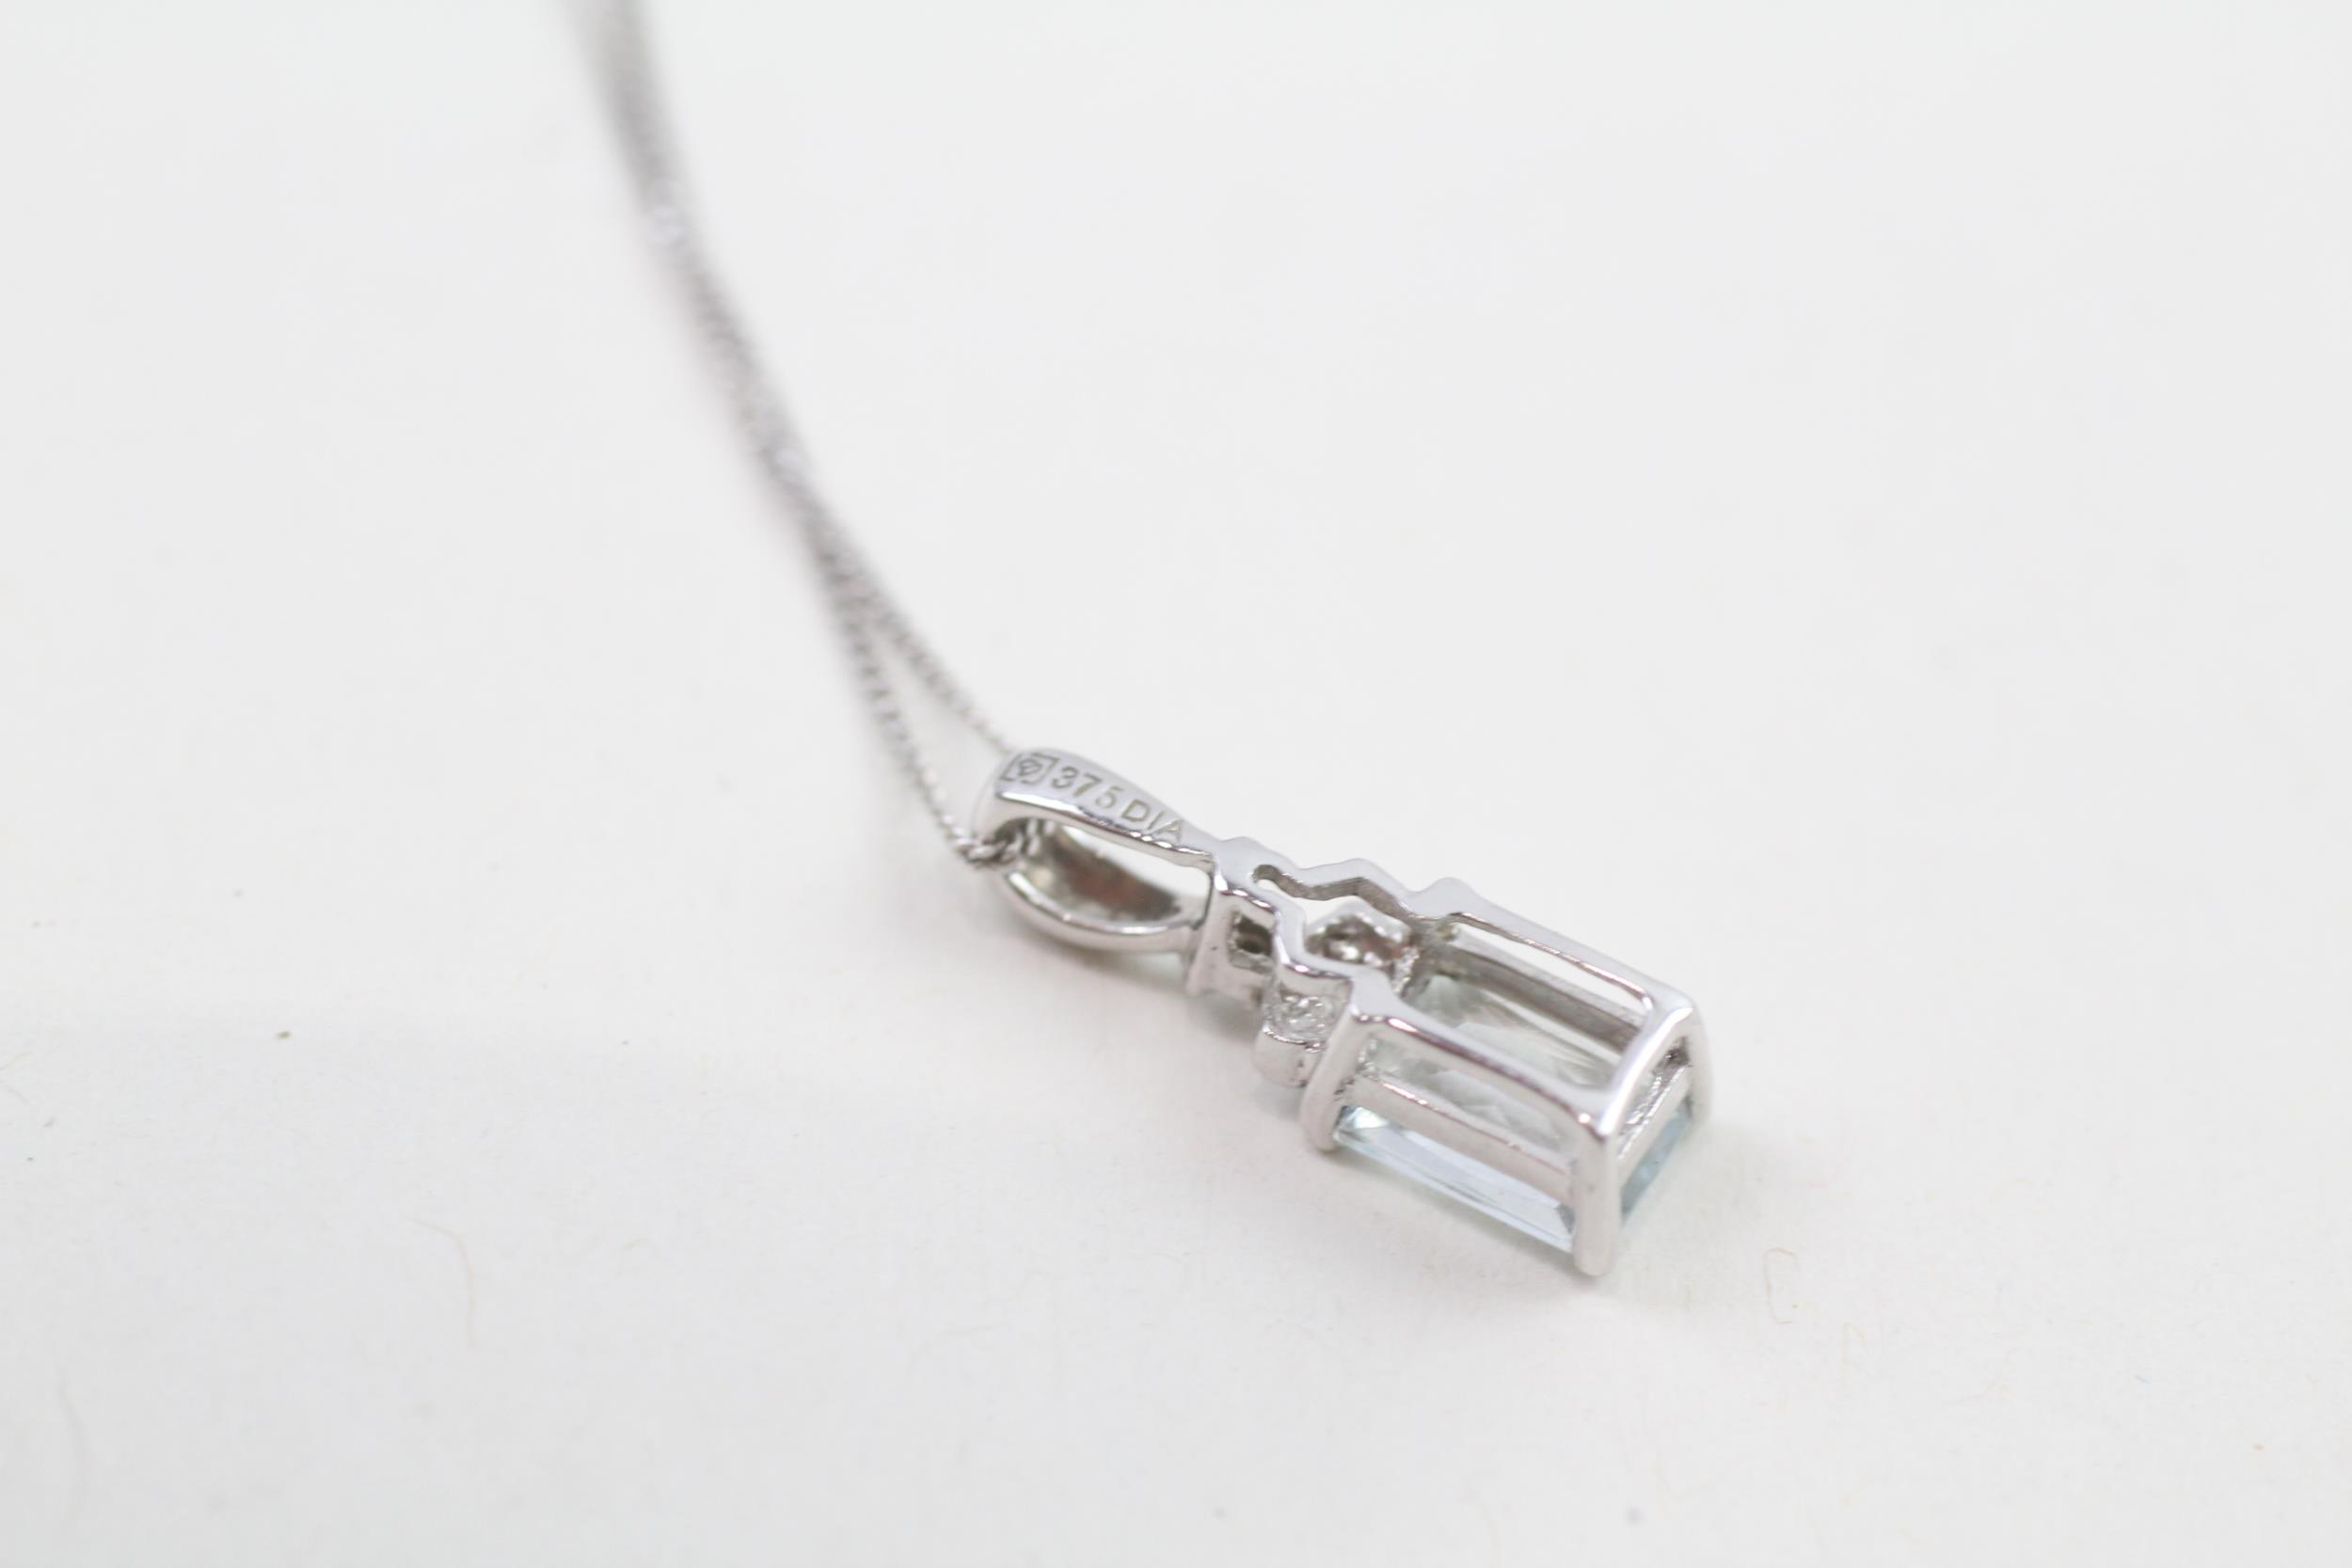 9ct white gold diamond & aquamarine pendant necklace (1.7g) - Image 4 of 4